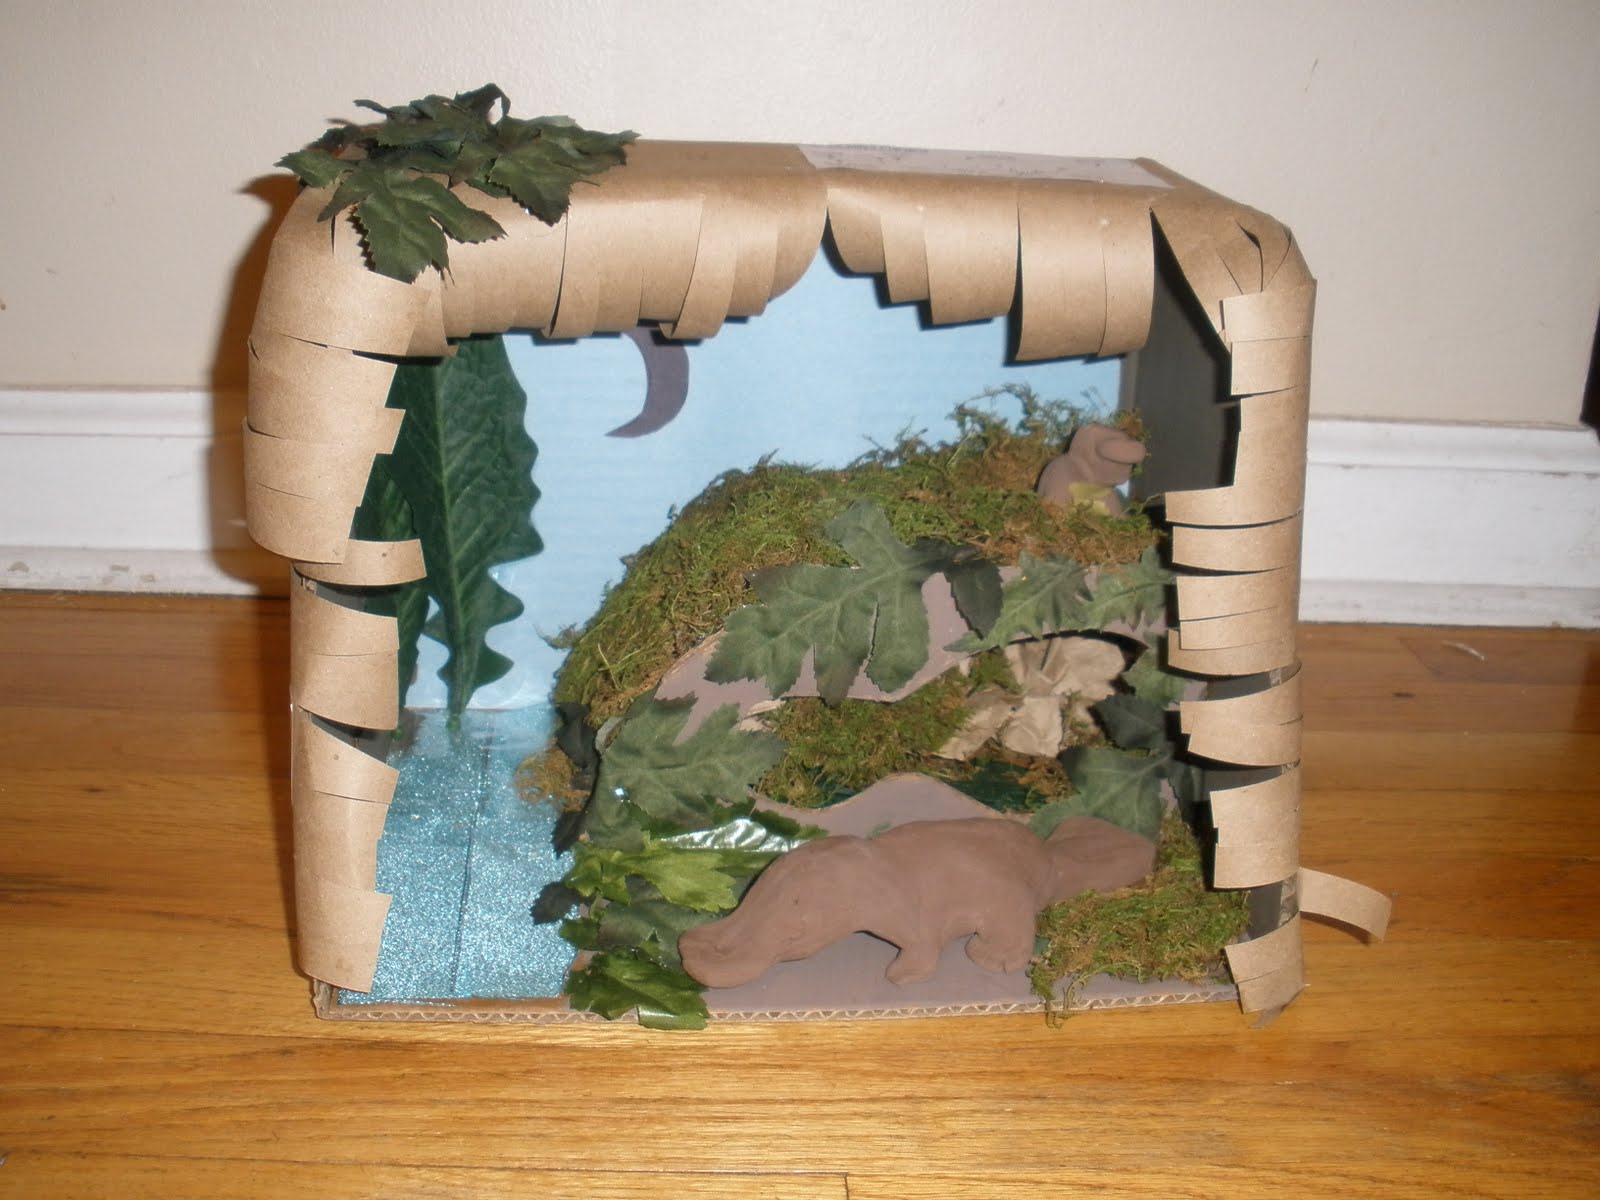 platypus habitat diorama